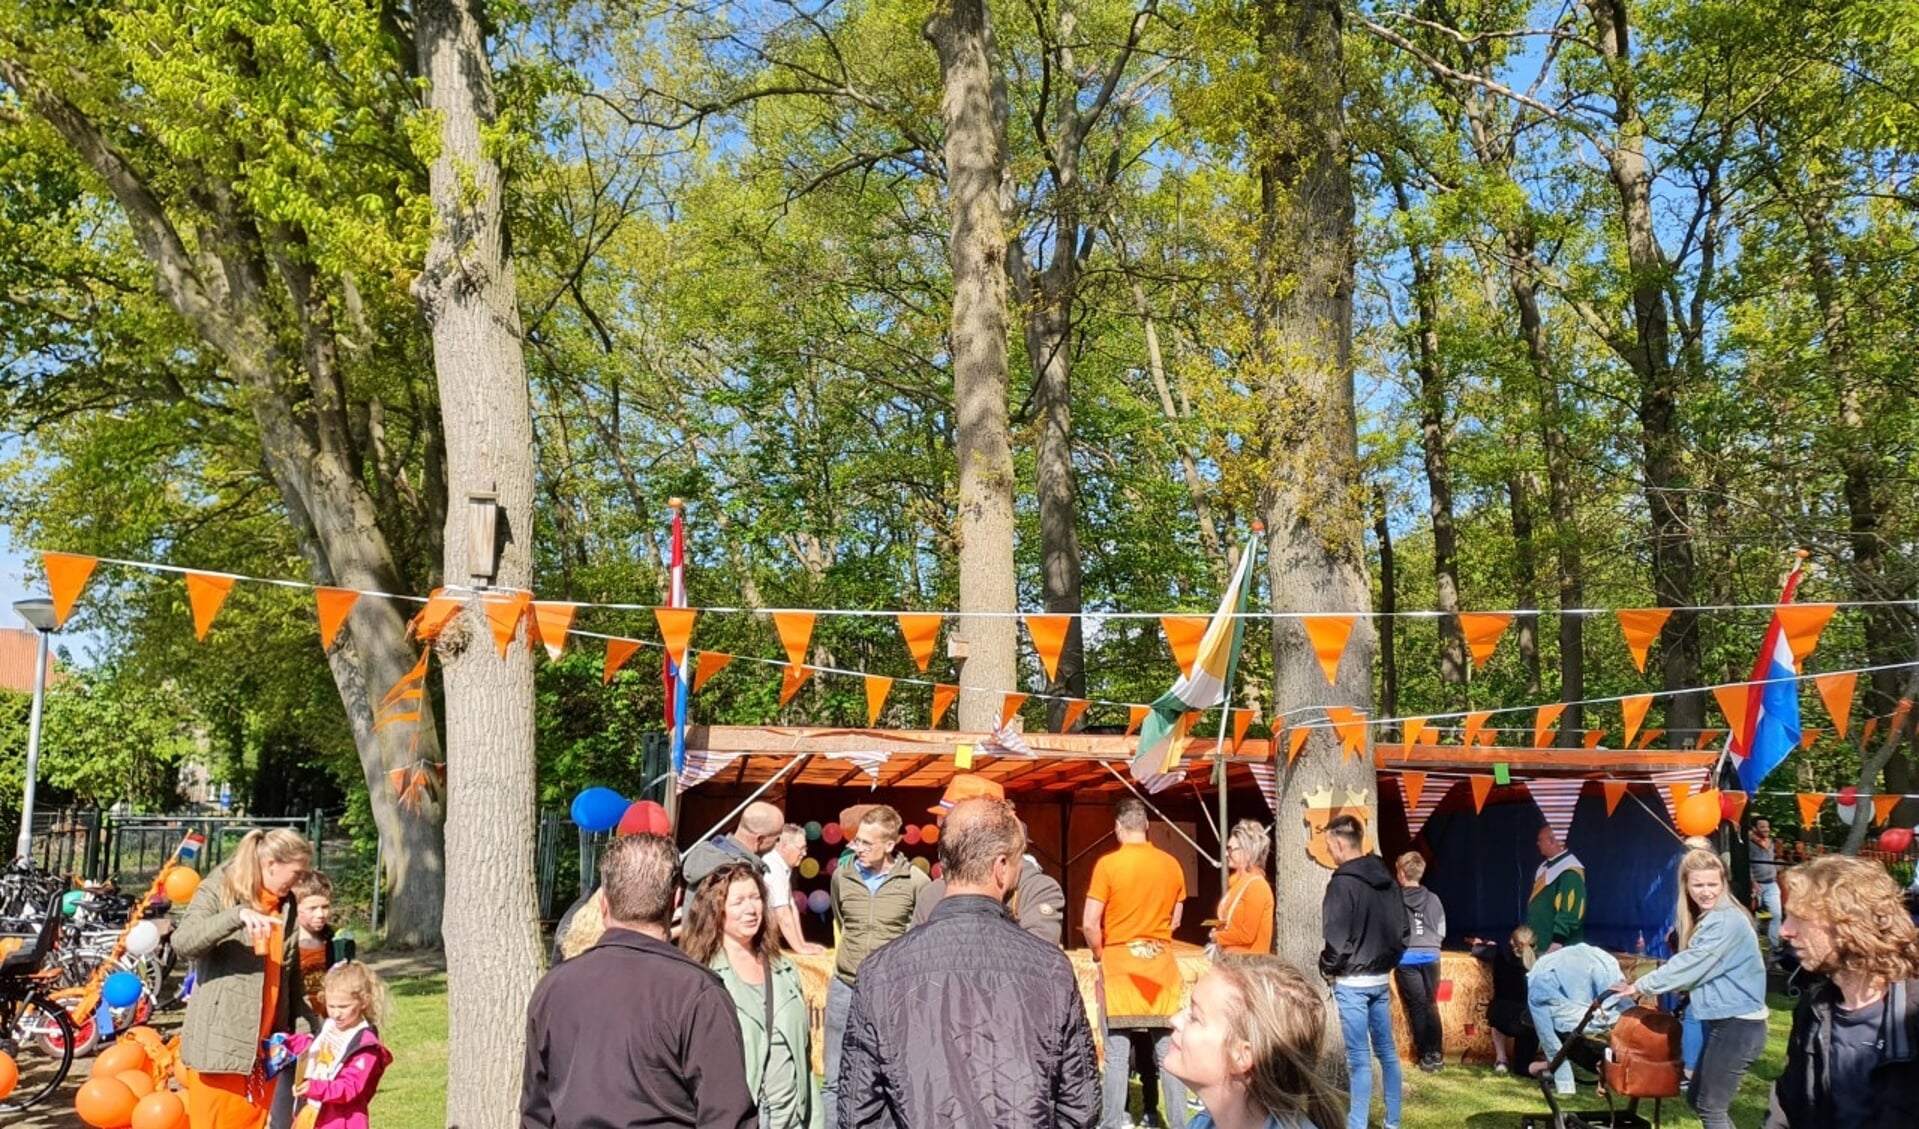 Woensdag 27 april werd in heel Nederland eindelijk weer samen Koningsdaggevierd. Ook in Nuland.